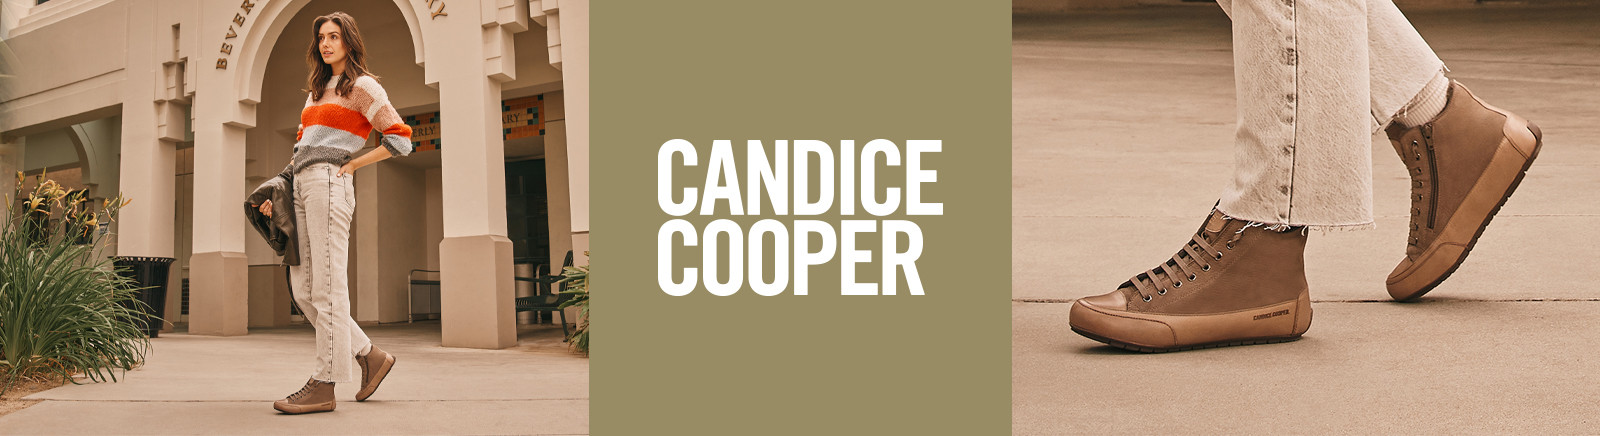 Candice Cooper Winterschuhe für Herren im Online-Shop von GISY kaufen